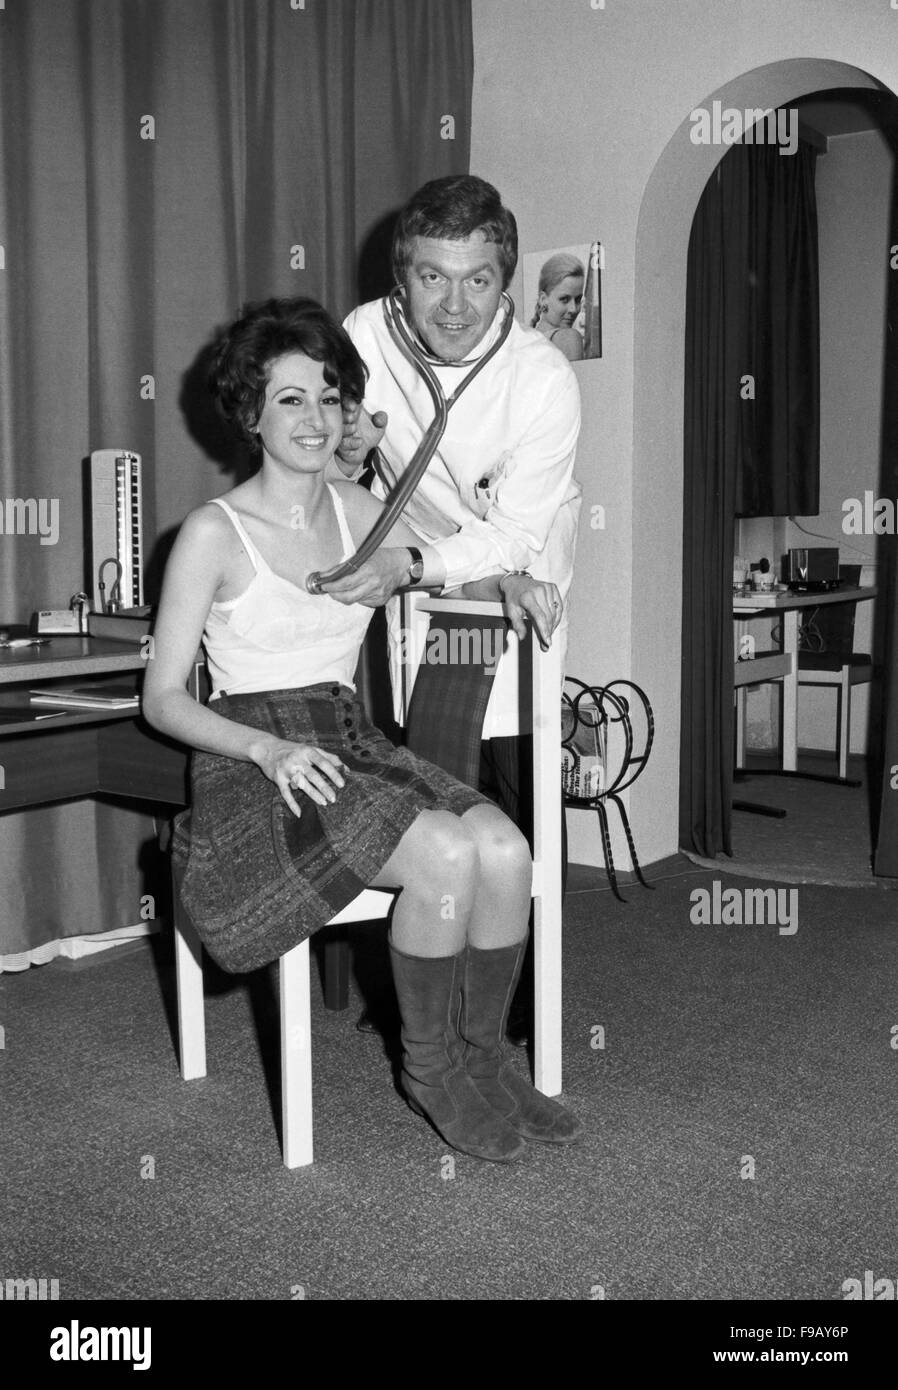 Joe Raphael bei einem Doktorspiel mit einer Kollegin, Deutschland 1960er Jahre. Joe Raphael playing doctor with a woman, Germany 1960s. 24x36swNeg349 Stock Photo